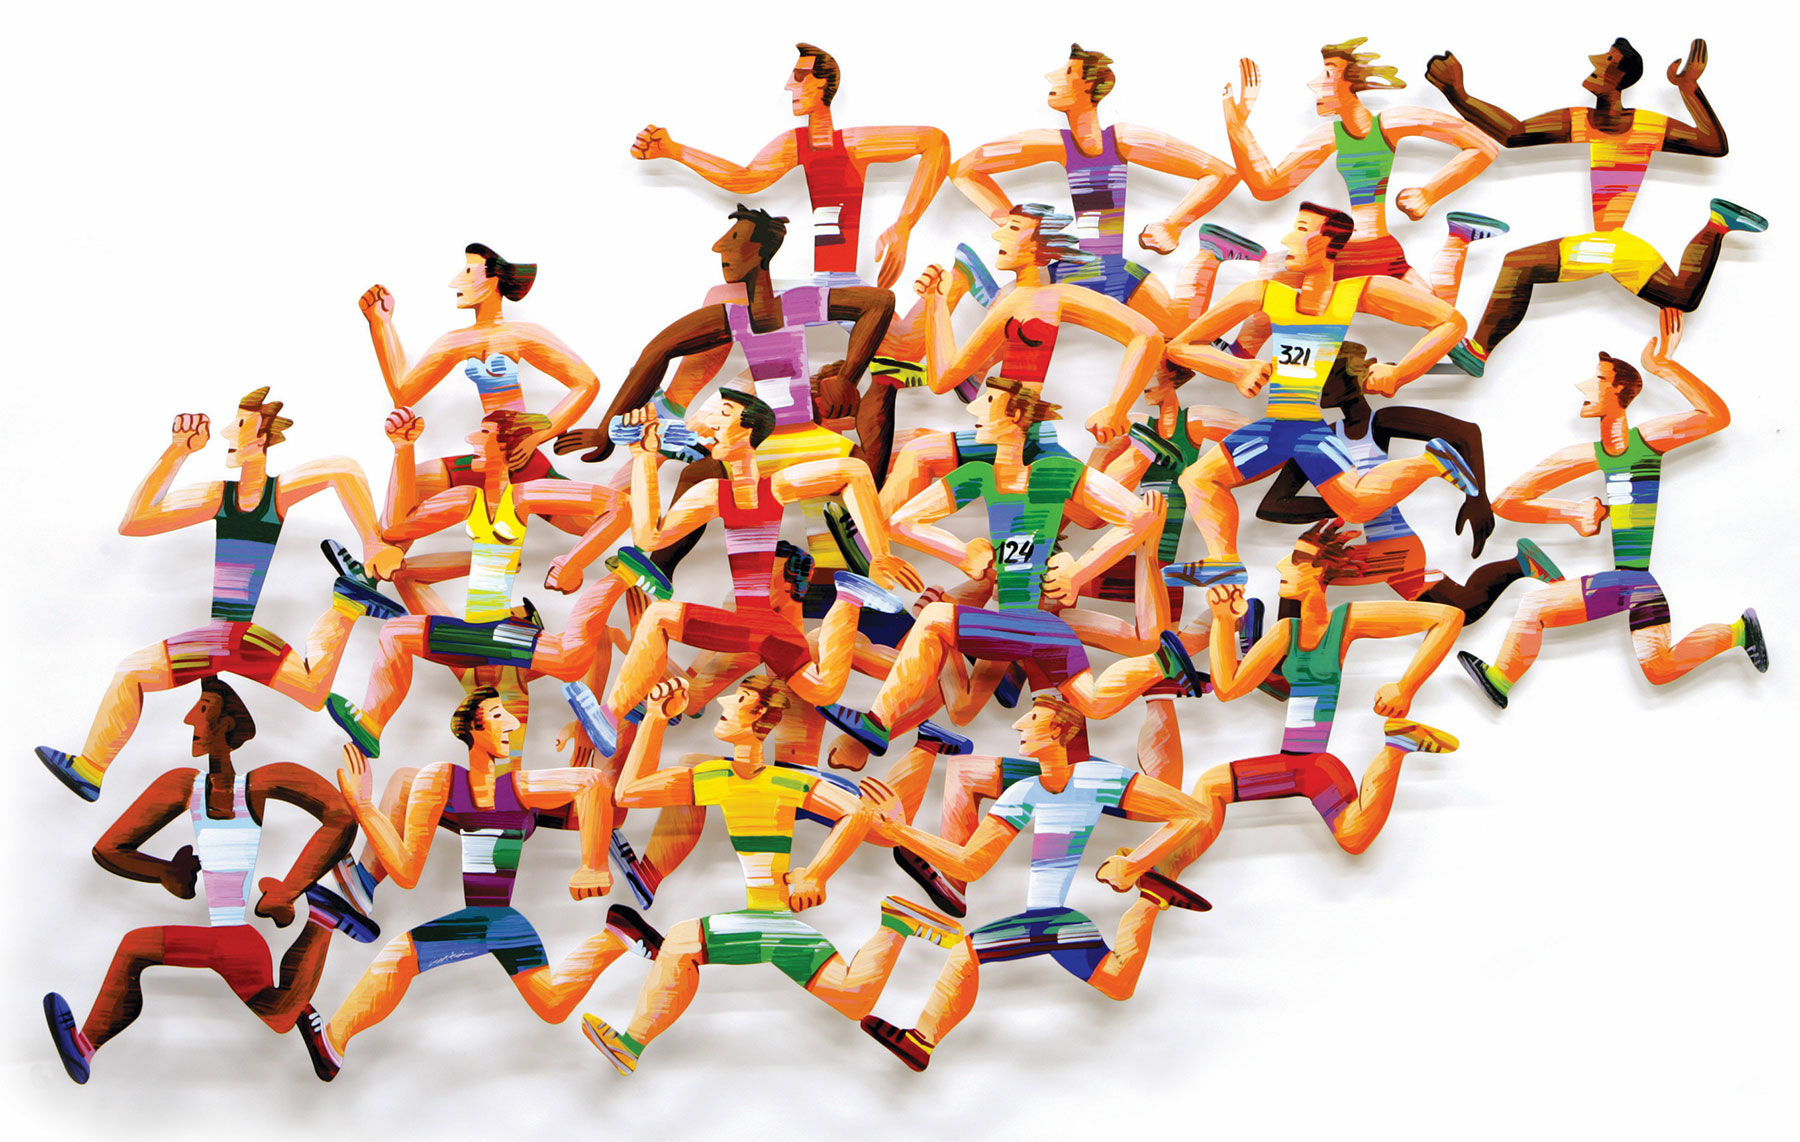 3D-muursculptuur "Long Distance Runners" (2004), aluminium von David Gerstein